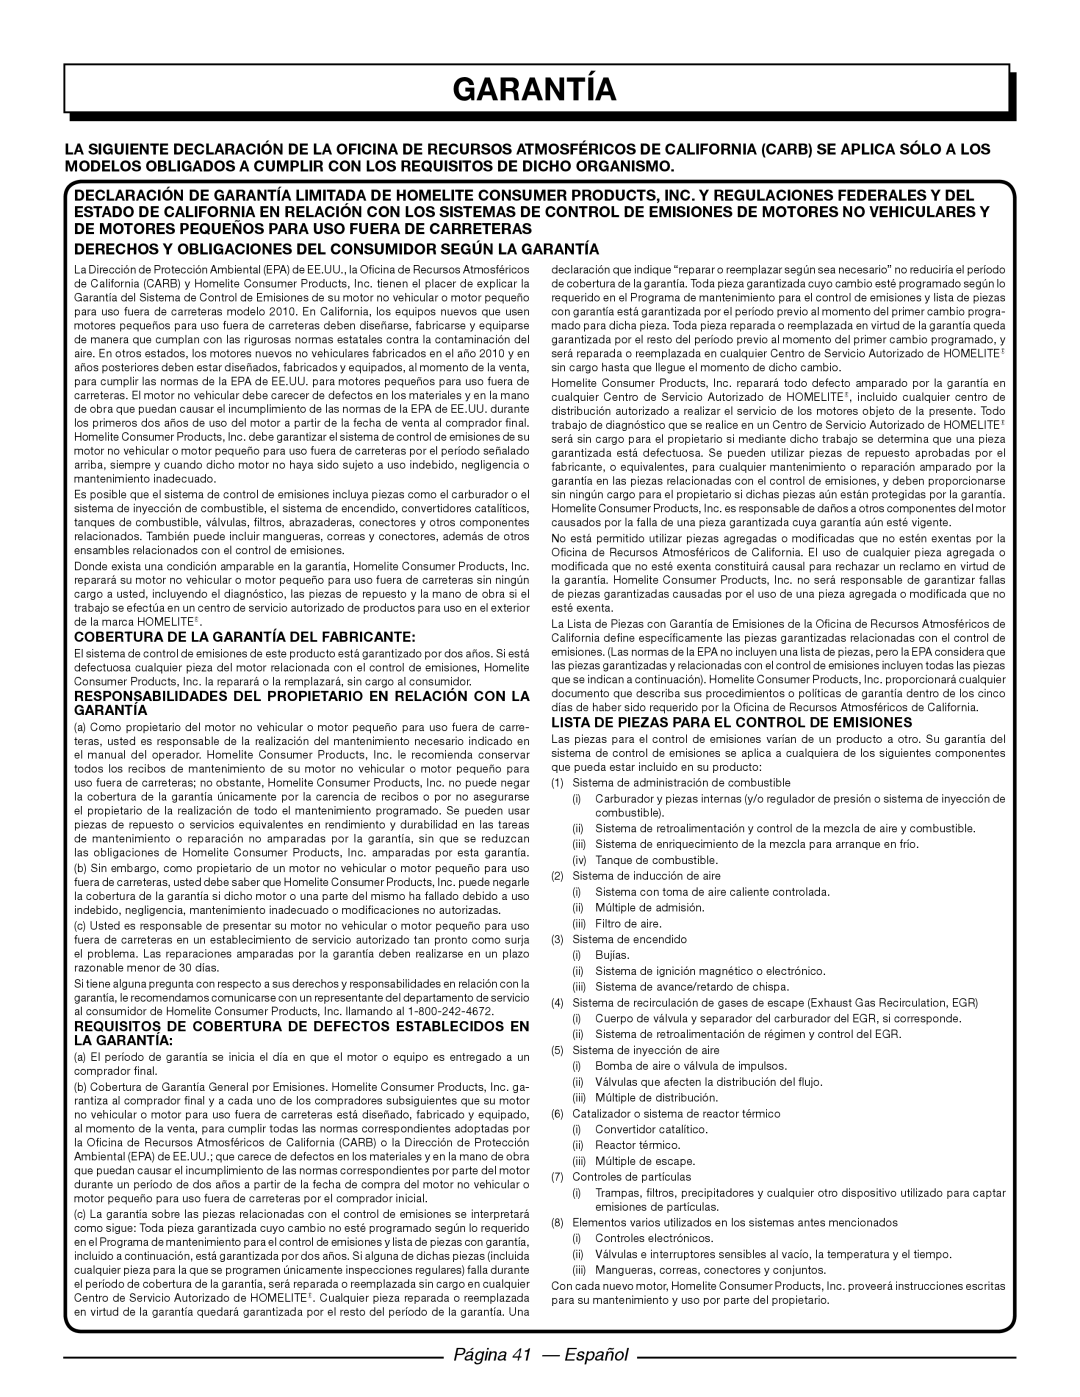 Homelite UT10566, UT10586, UT10584 Página 41 - Español, Derechos Y Obligaciones Del Consumidor Según La Garantía 